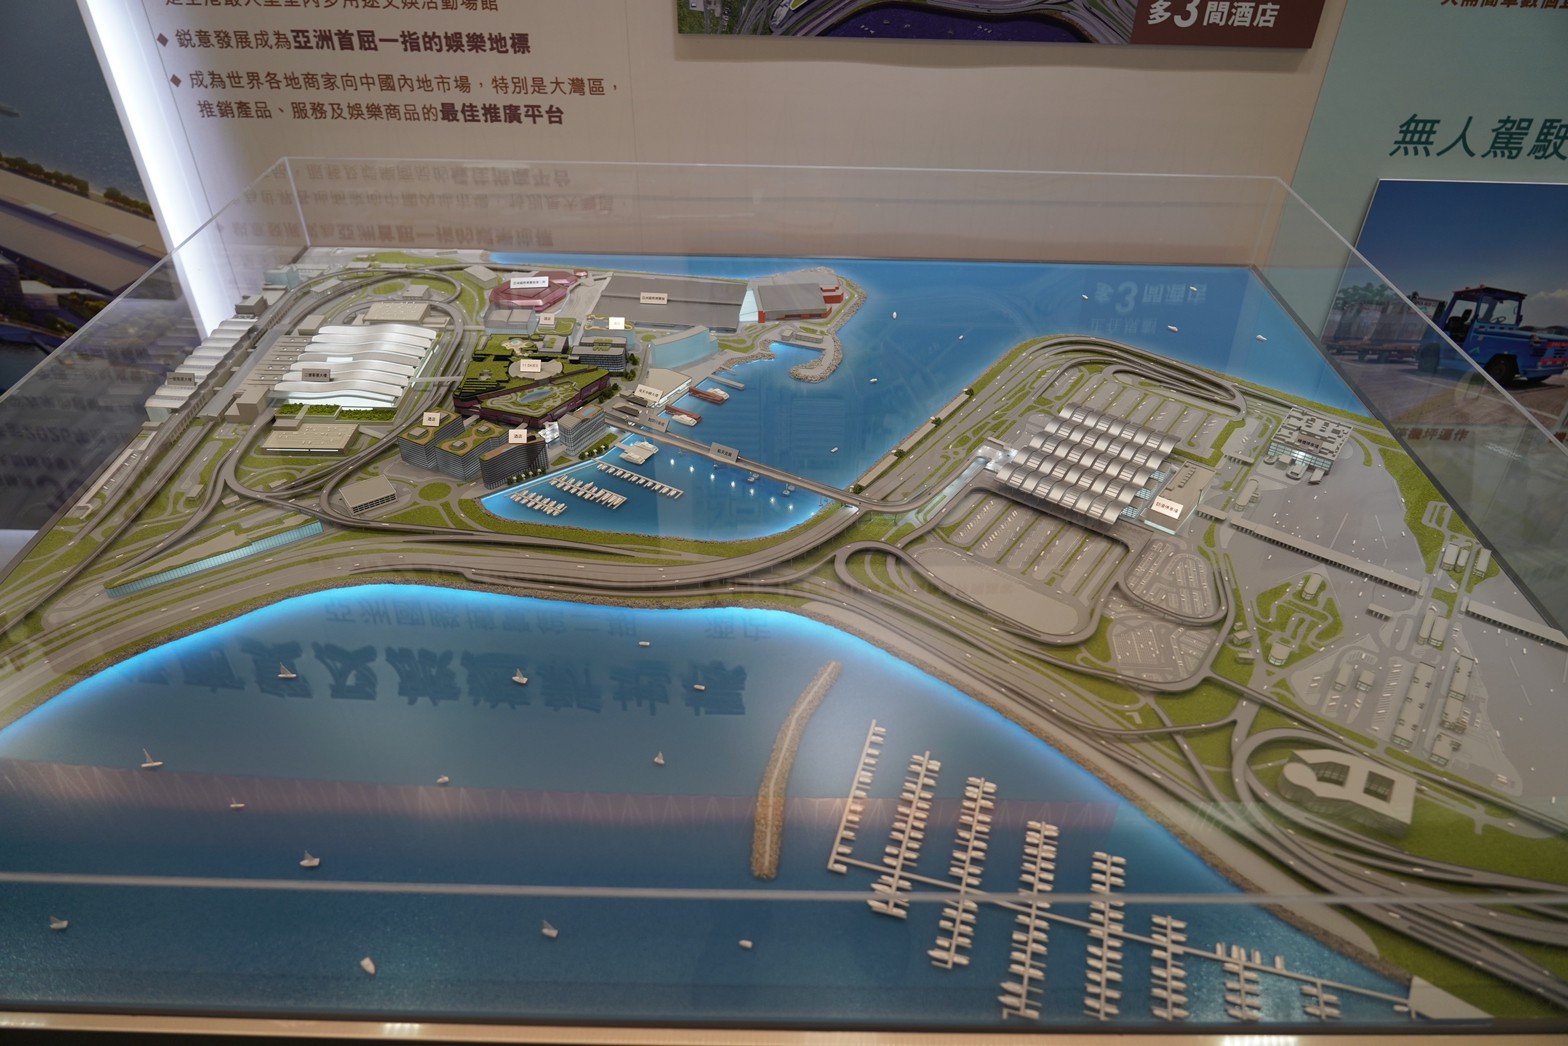 ‘คีรี’ เดินหน้าลุยพัฒนาสนามบินนานาชาติอู่ตะเภา และเมืองการบินภาคตะวันออก นำคณะ UTA และองค์กรชั้นนำ เยี่ยมชมการพัฒนาท่าอากาศยานนานาชาติฮ่องกง Mr. Keeree moves forward to develop U-Tapao International Airport and the Eastern Aviation City while UTA and leading organizations visit and observe the development of Hong Kong International Airport